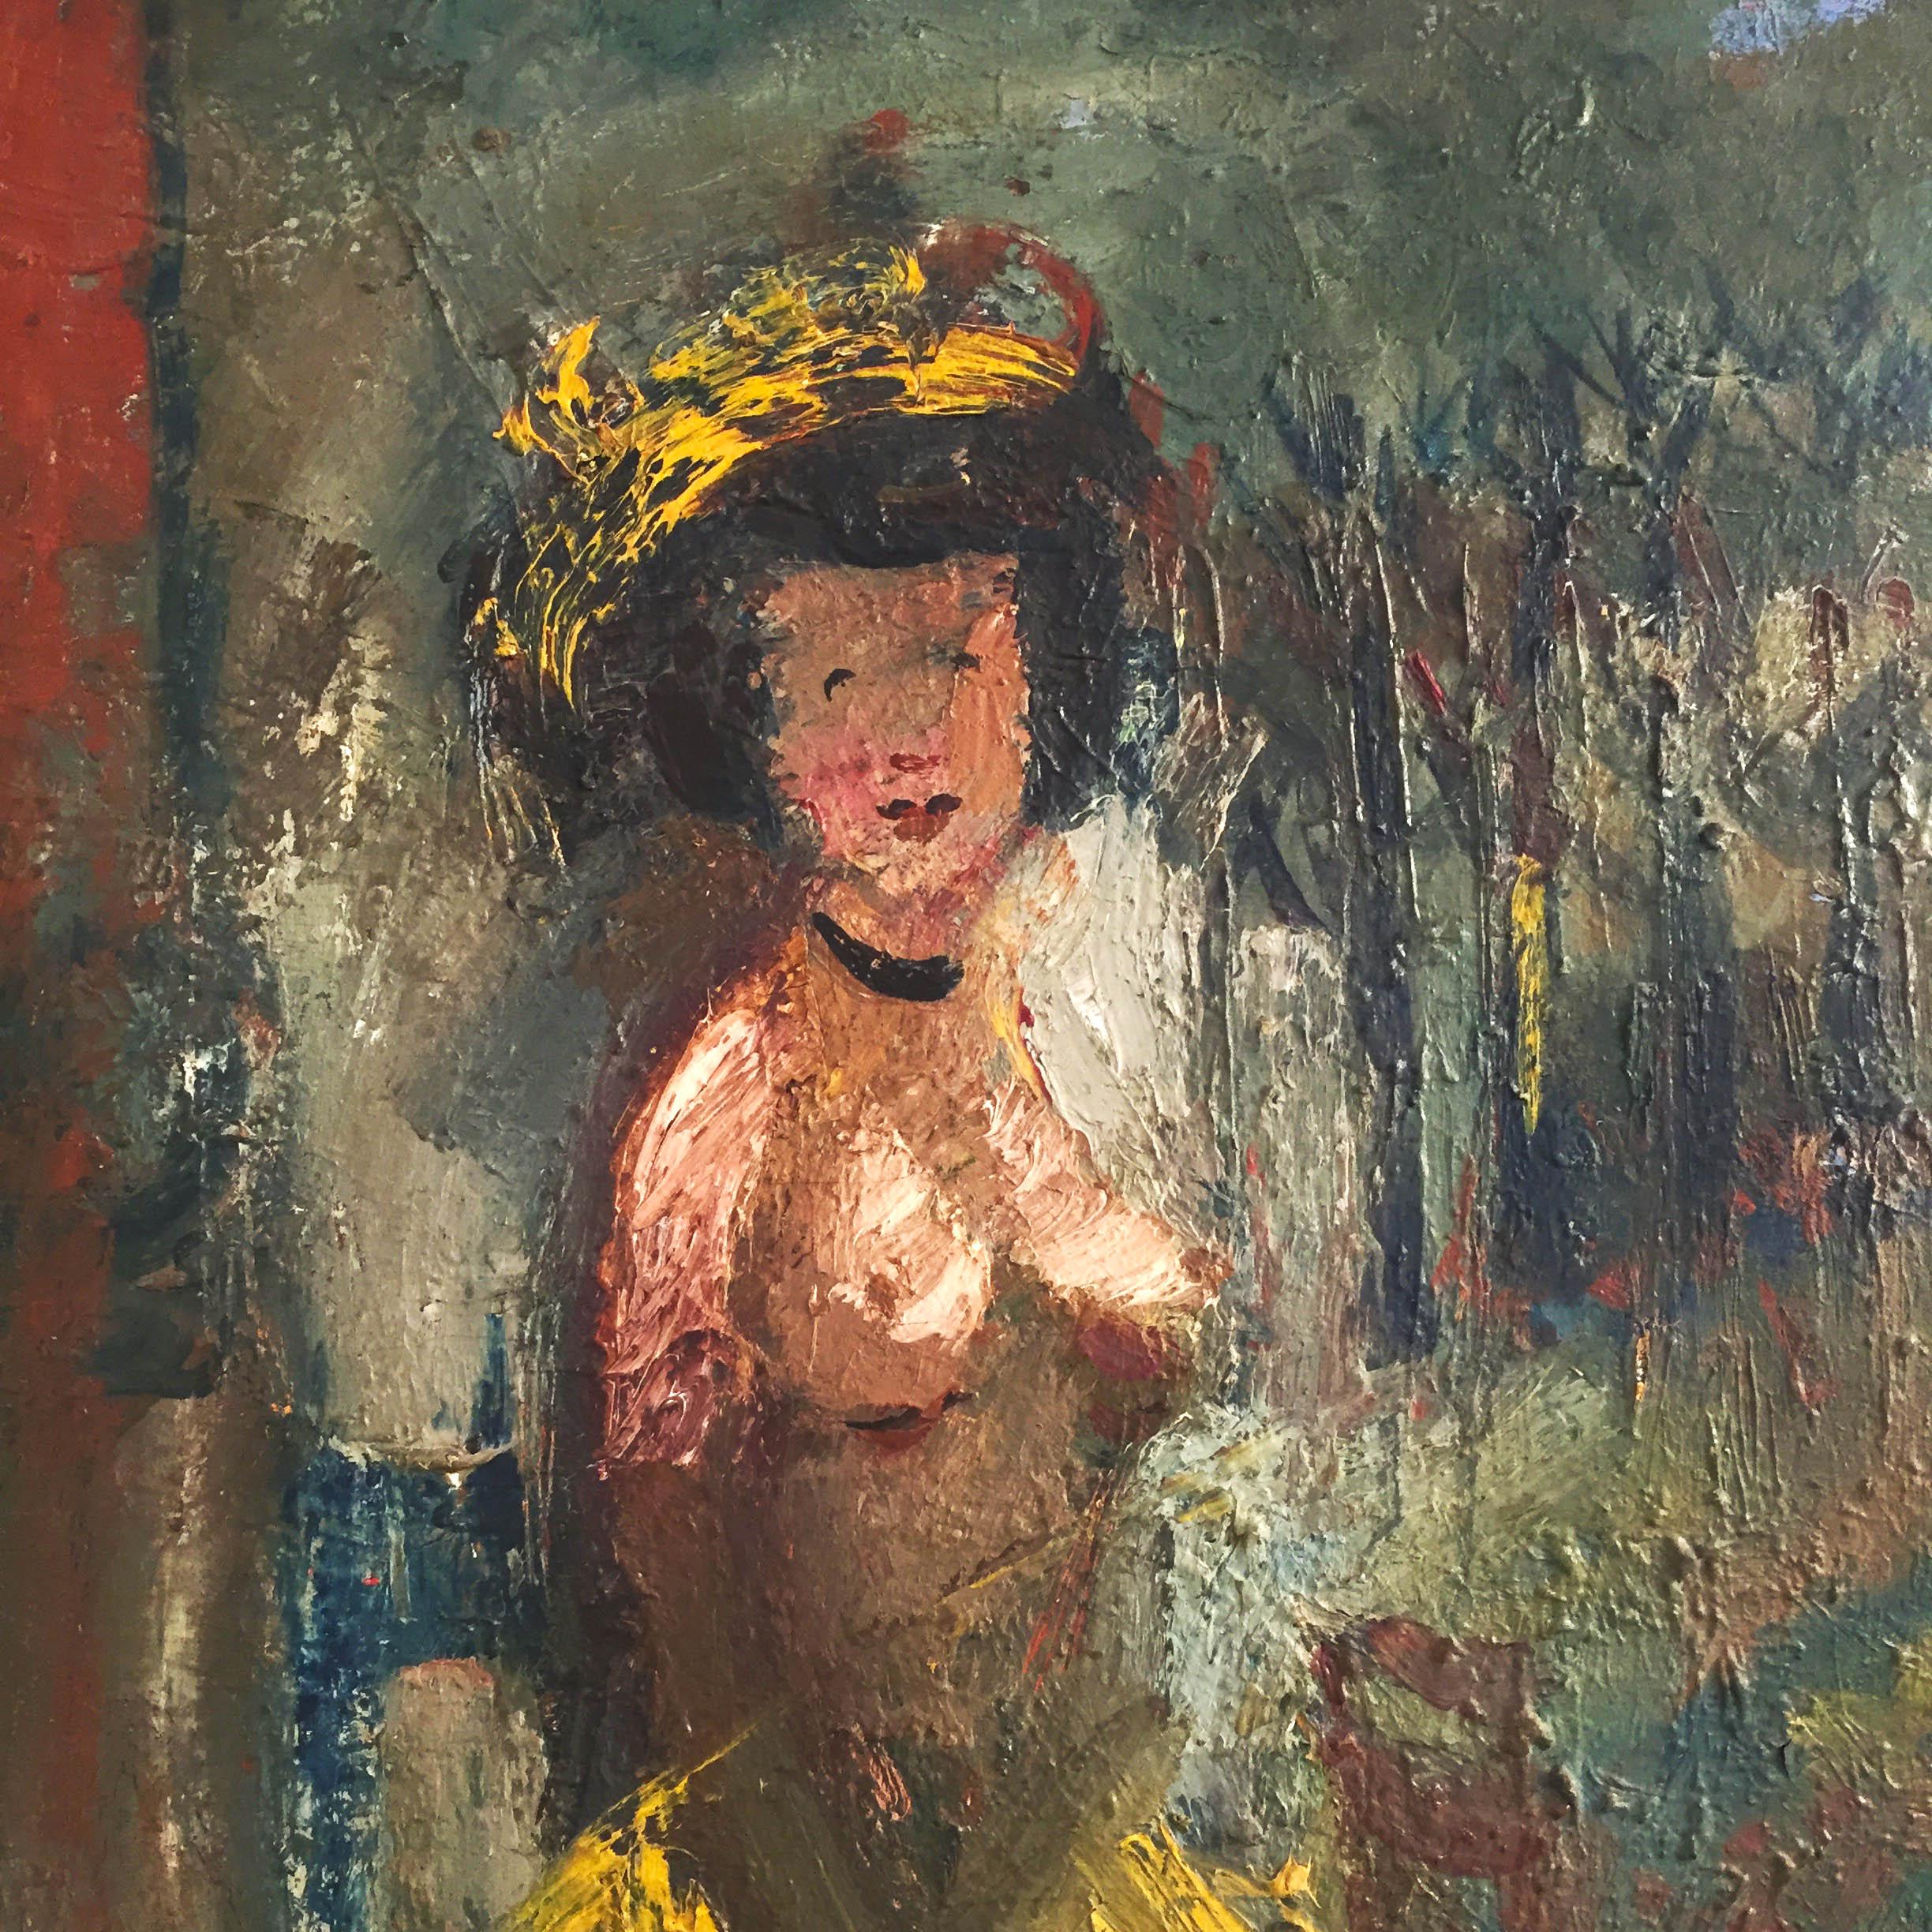 Une belle peinture représentant une femme exotique à moitié nue, vêtue d'une jupe colorée (peut-être en paille), avec une coiffe et un tour de cou similaires. La toile et le dos sont chargés d'histoire. Fernand Labat était un artiste français